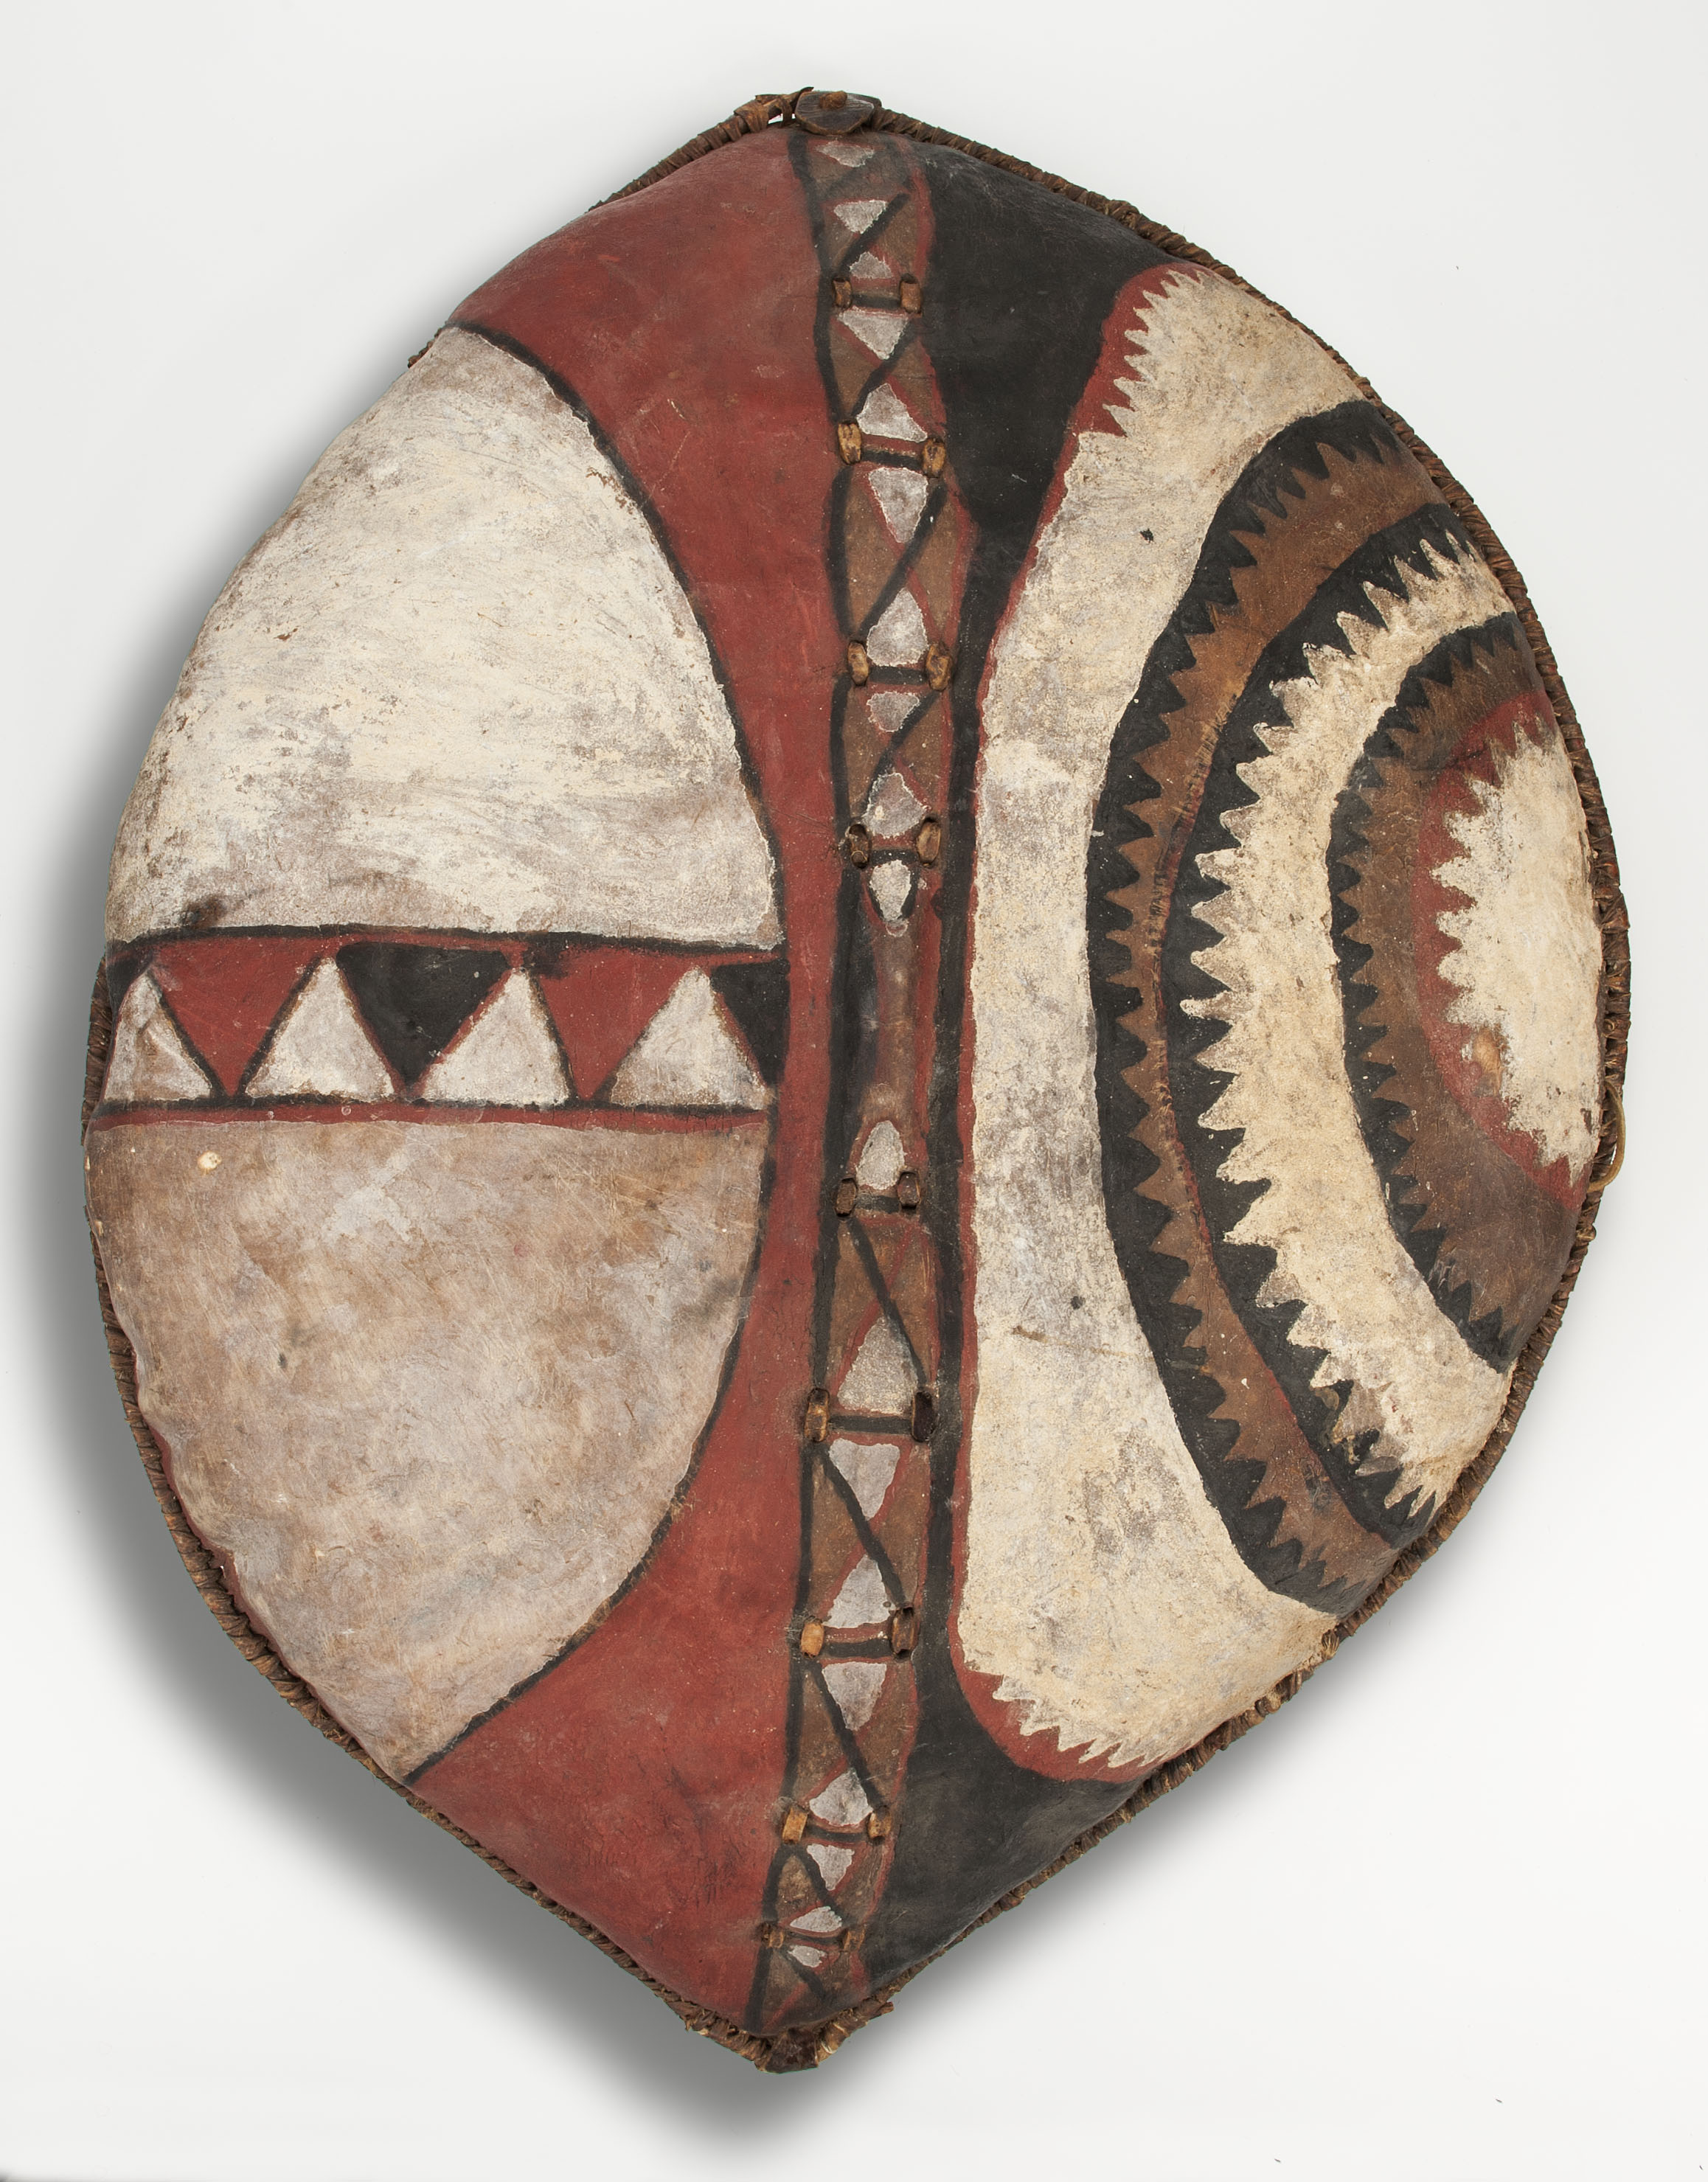 Escudo by Artista anónimo  - collected near Narok in 1977 Museo de Arte de la Universidad de Indiana